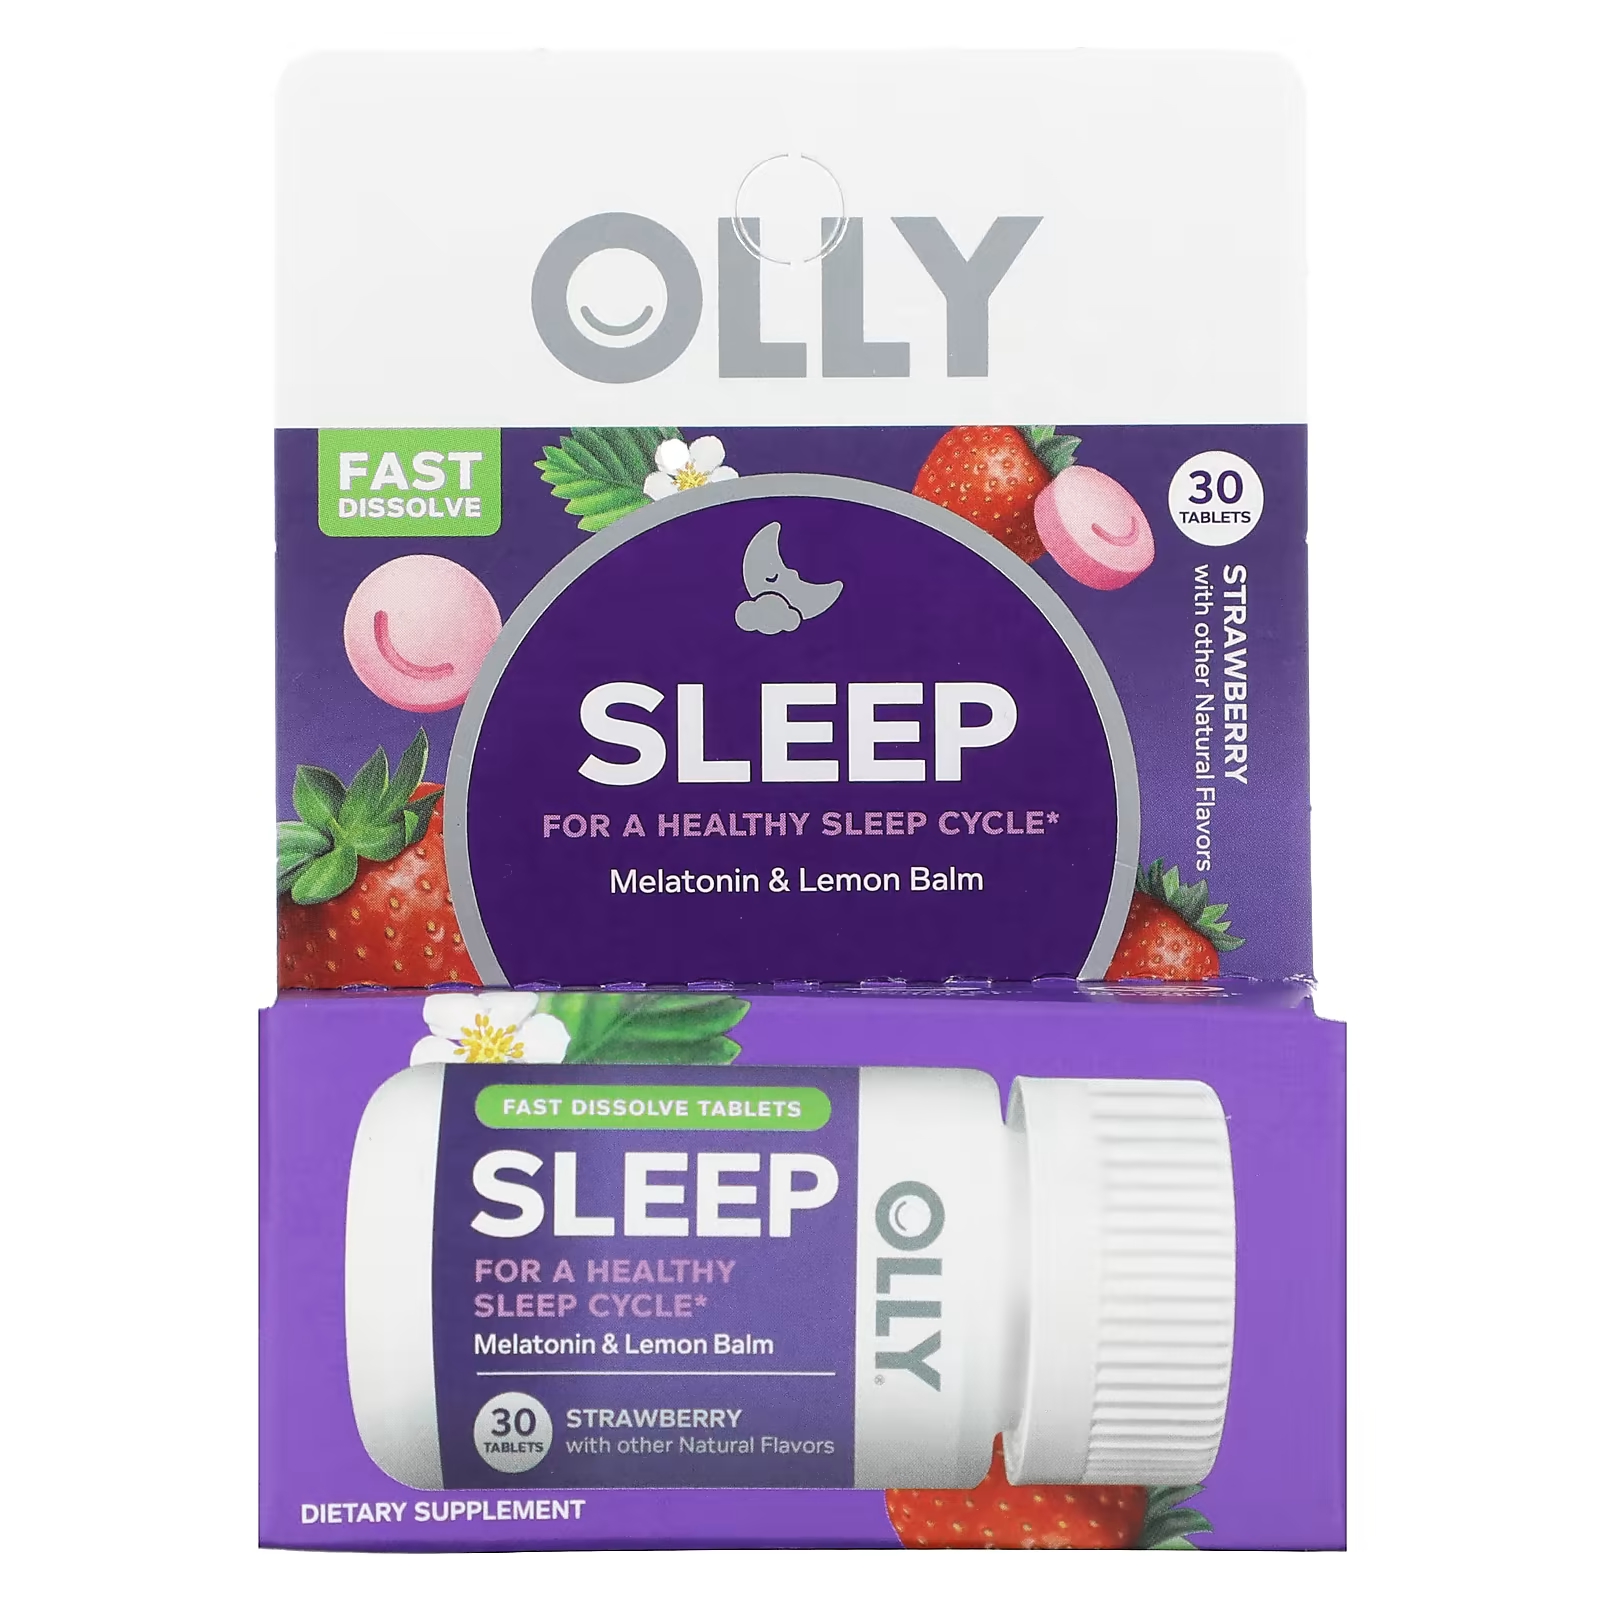 Пищевая добавка Olly Sleep клубника, 30 таблеток пищевая добавка olly sleep клубника 30 таблеток